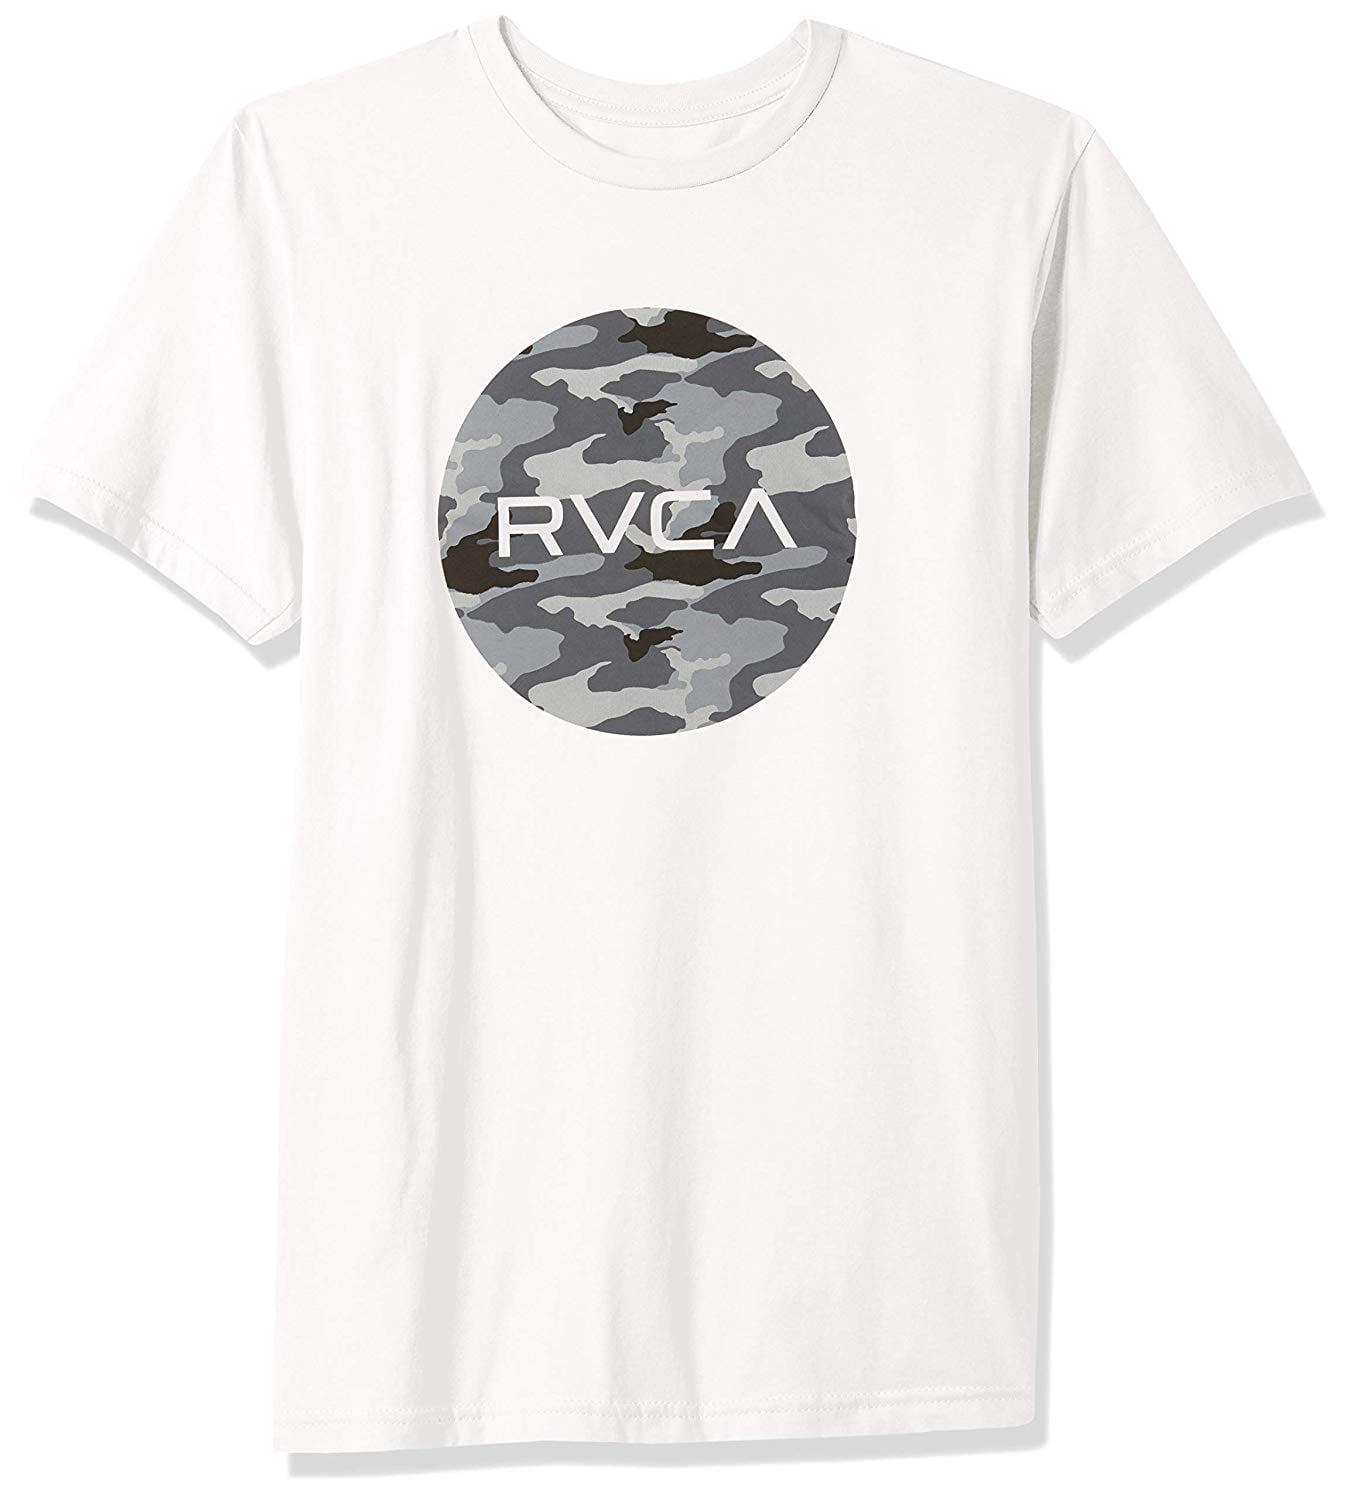 XL or XXL L RVCA Mens Big RVCA 3/4 Raglan T Shirt White Size M 